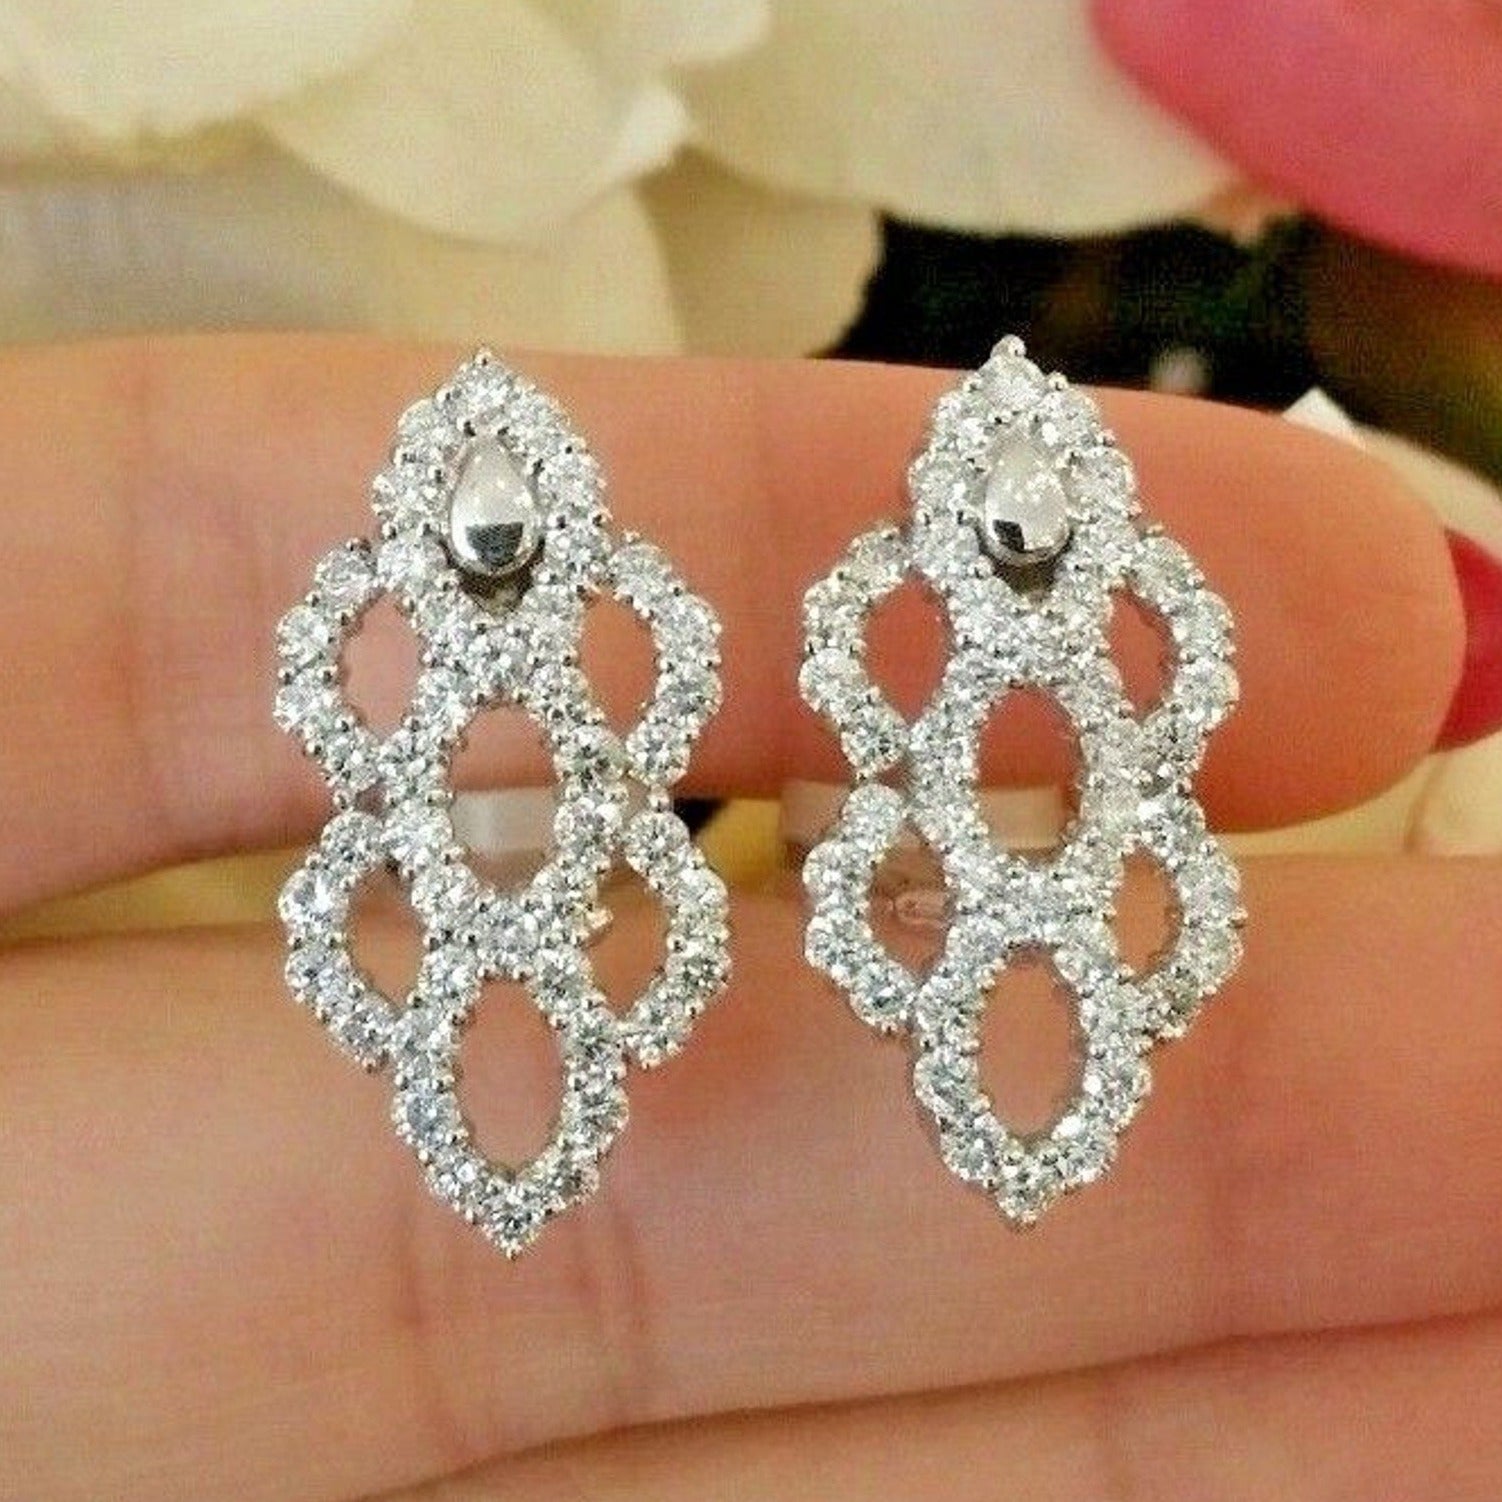 2.56 carat Diamond Earrings Honeycomb Design in 18k White Gold